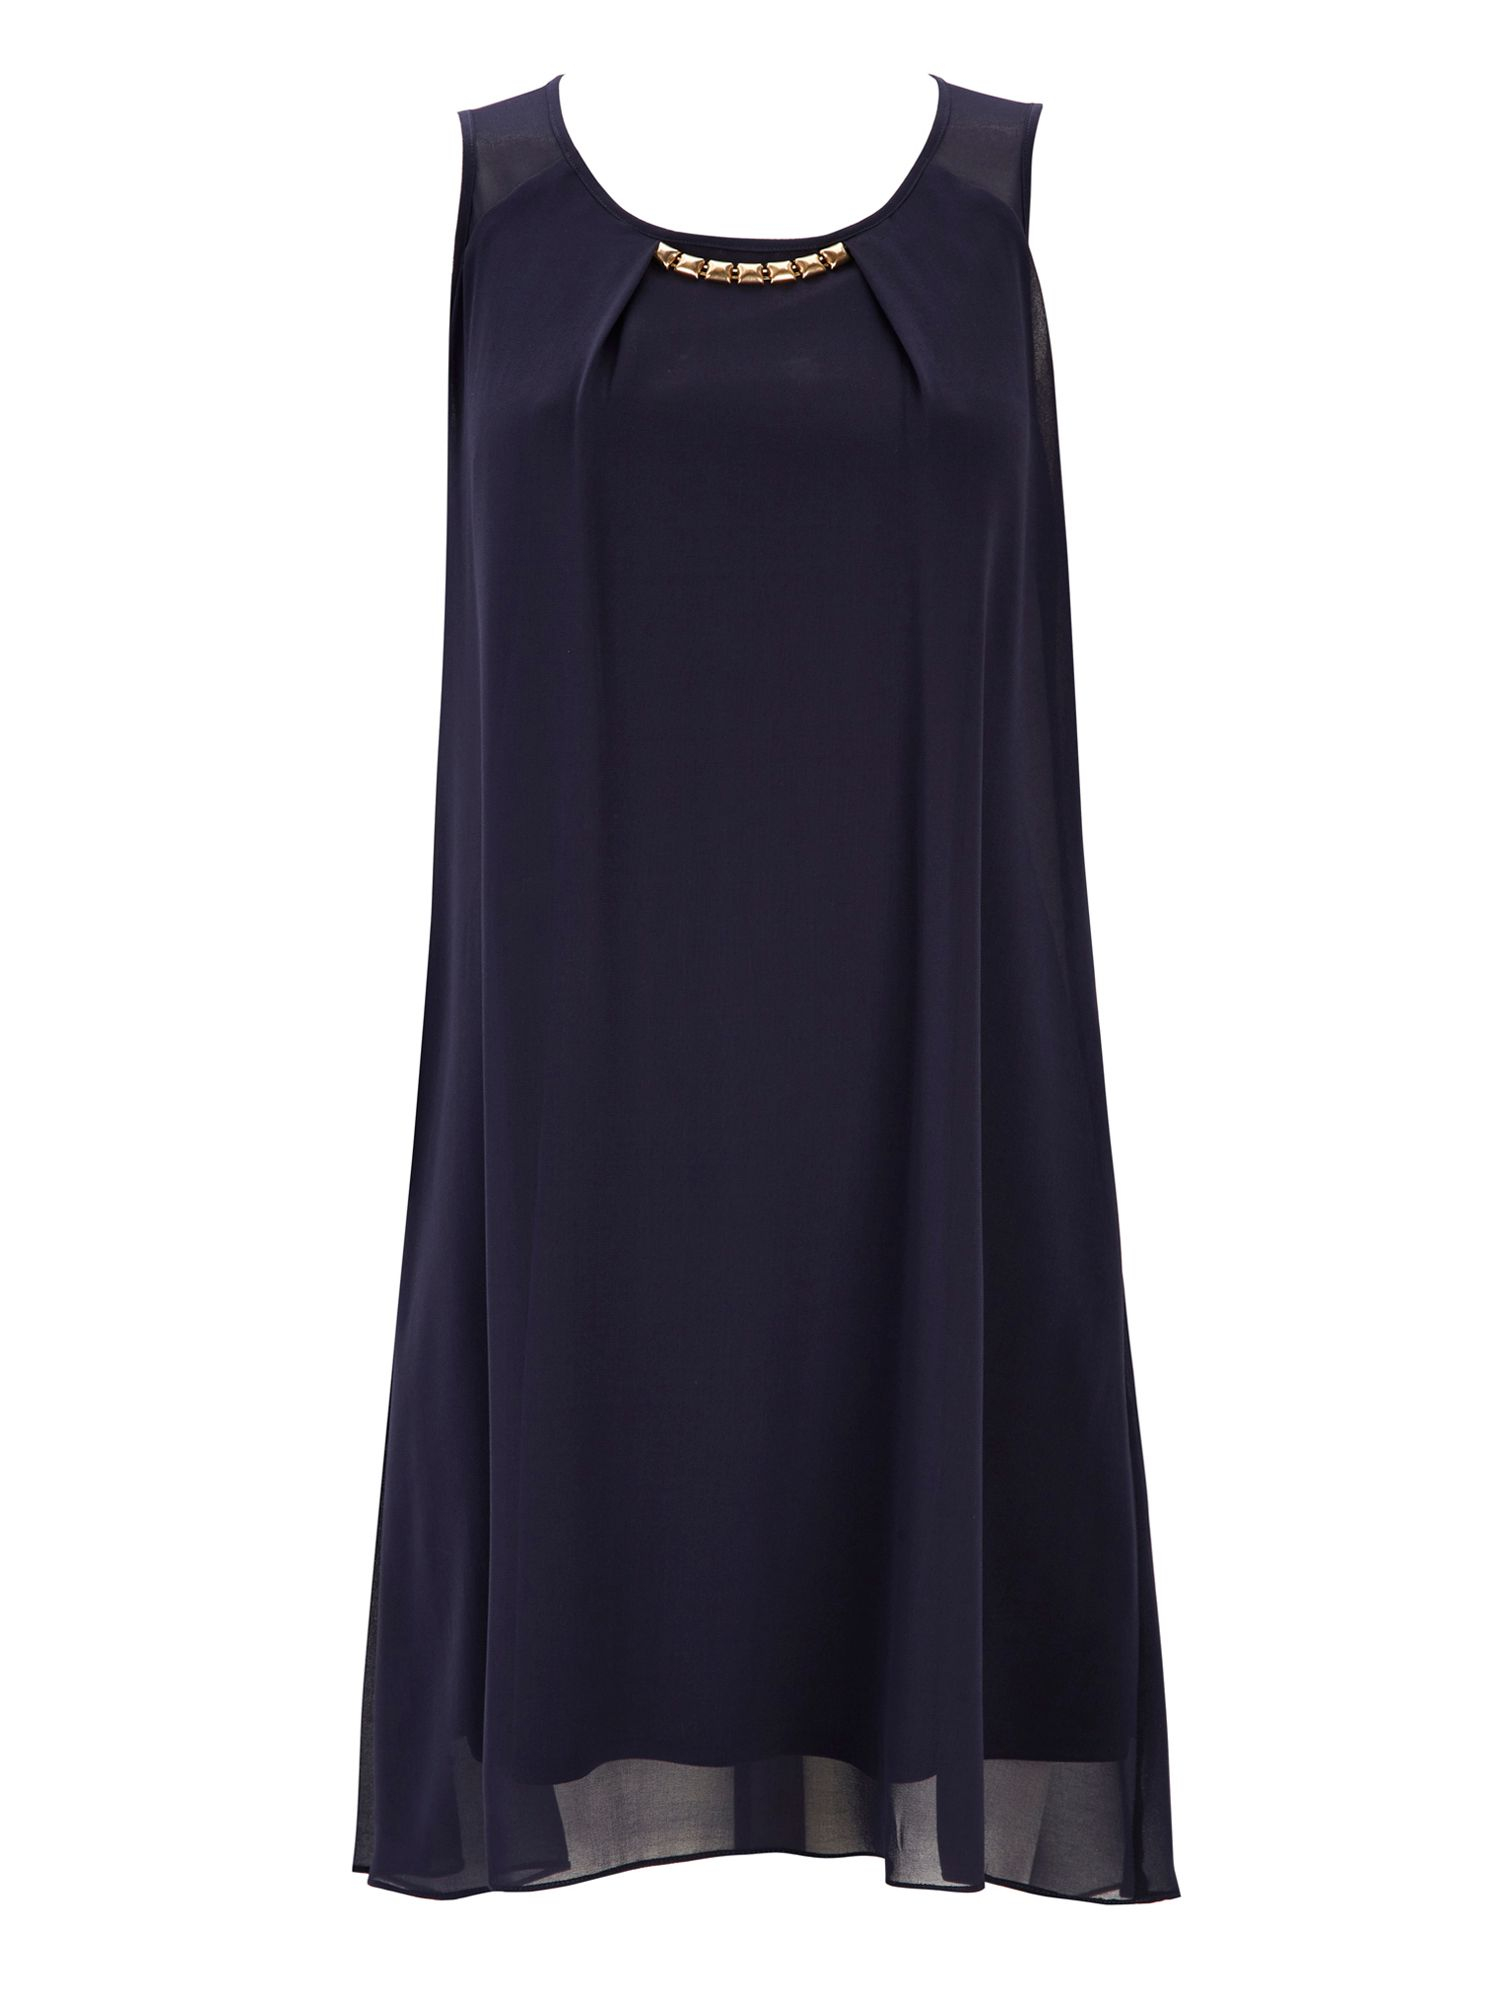 Wallis Embellished Dress in Blue (Navy) | Lyst